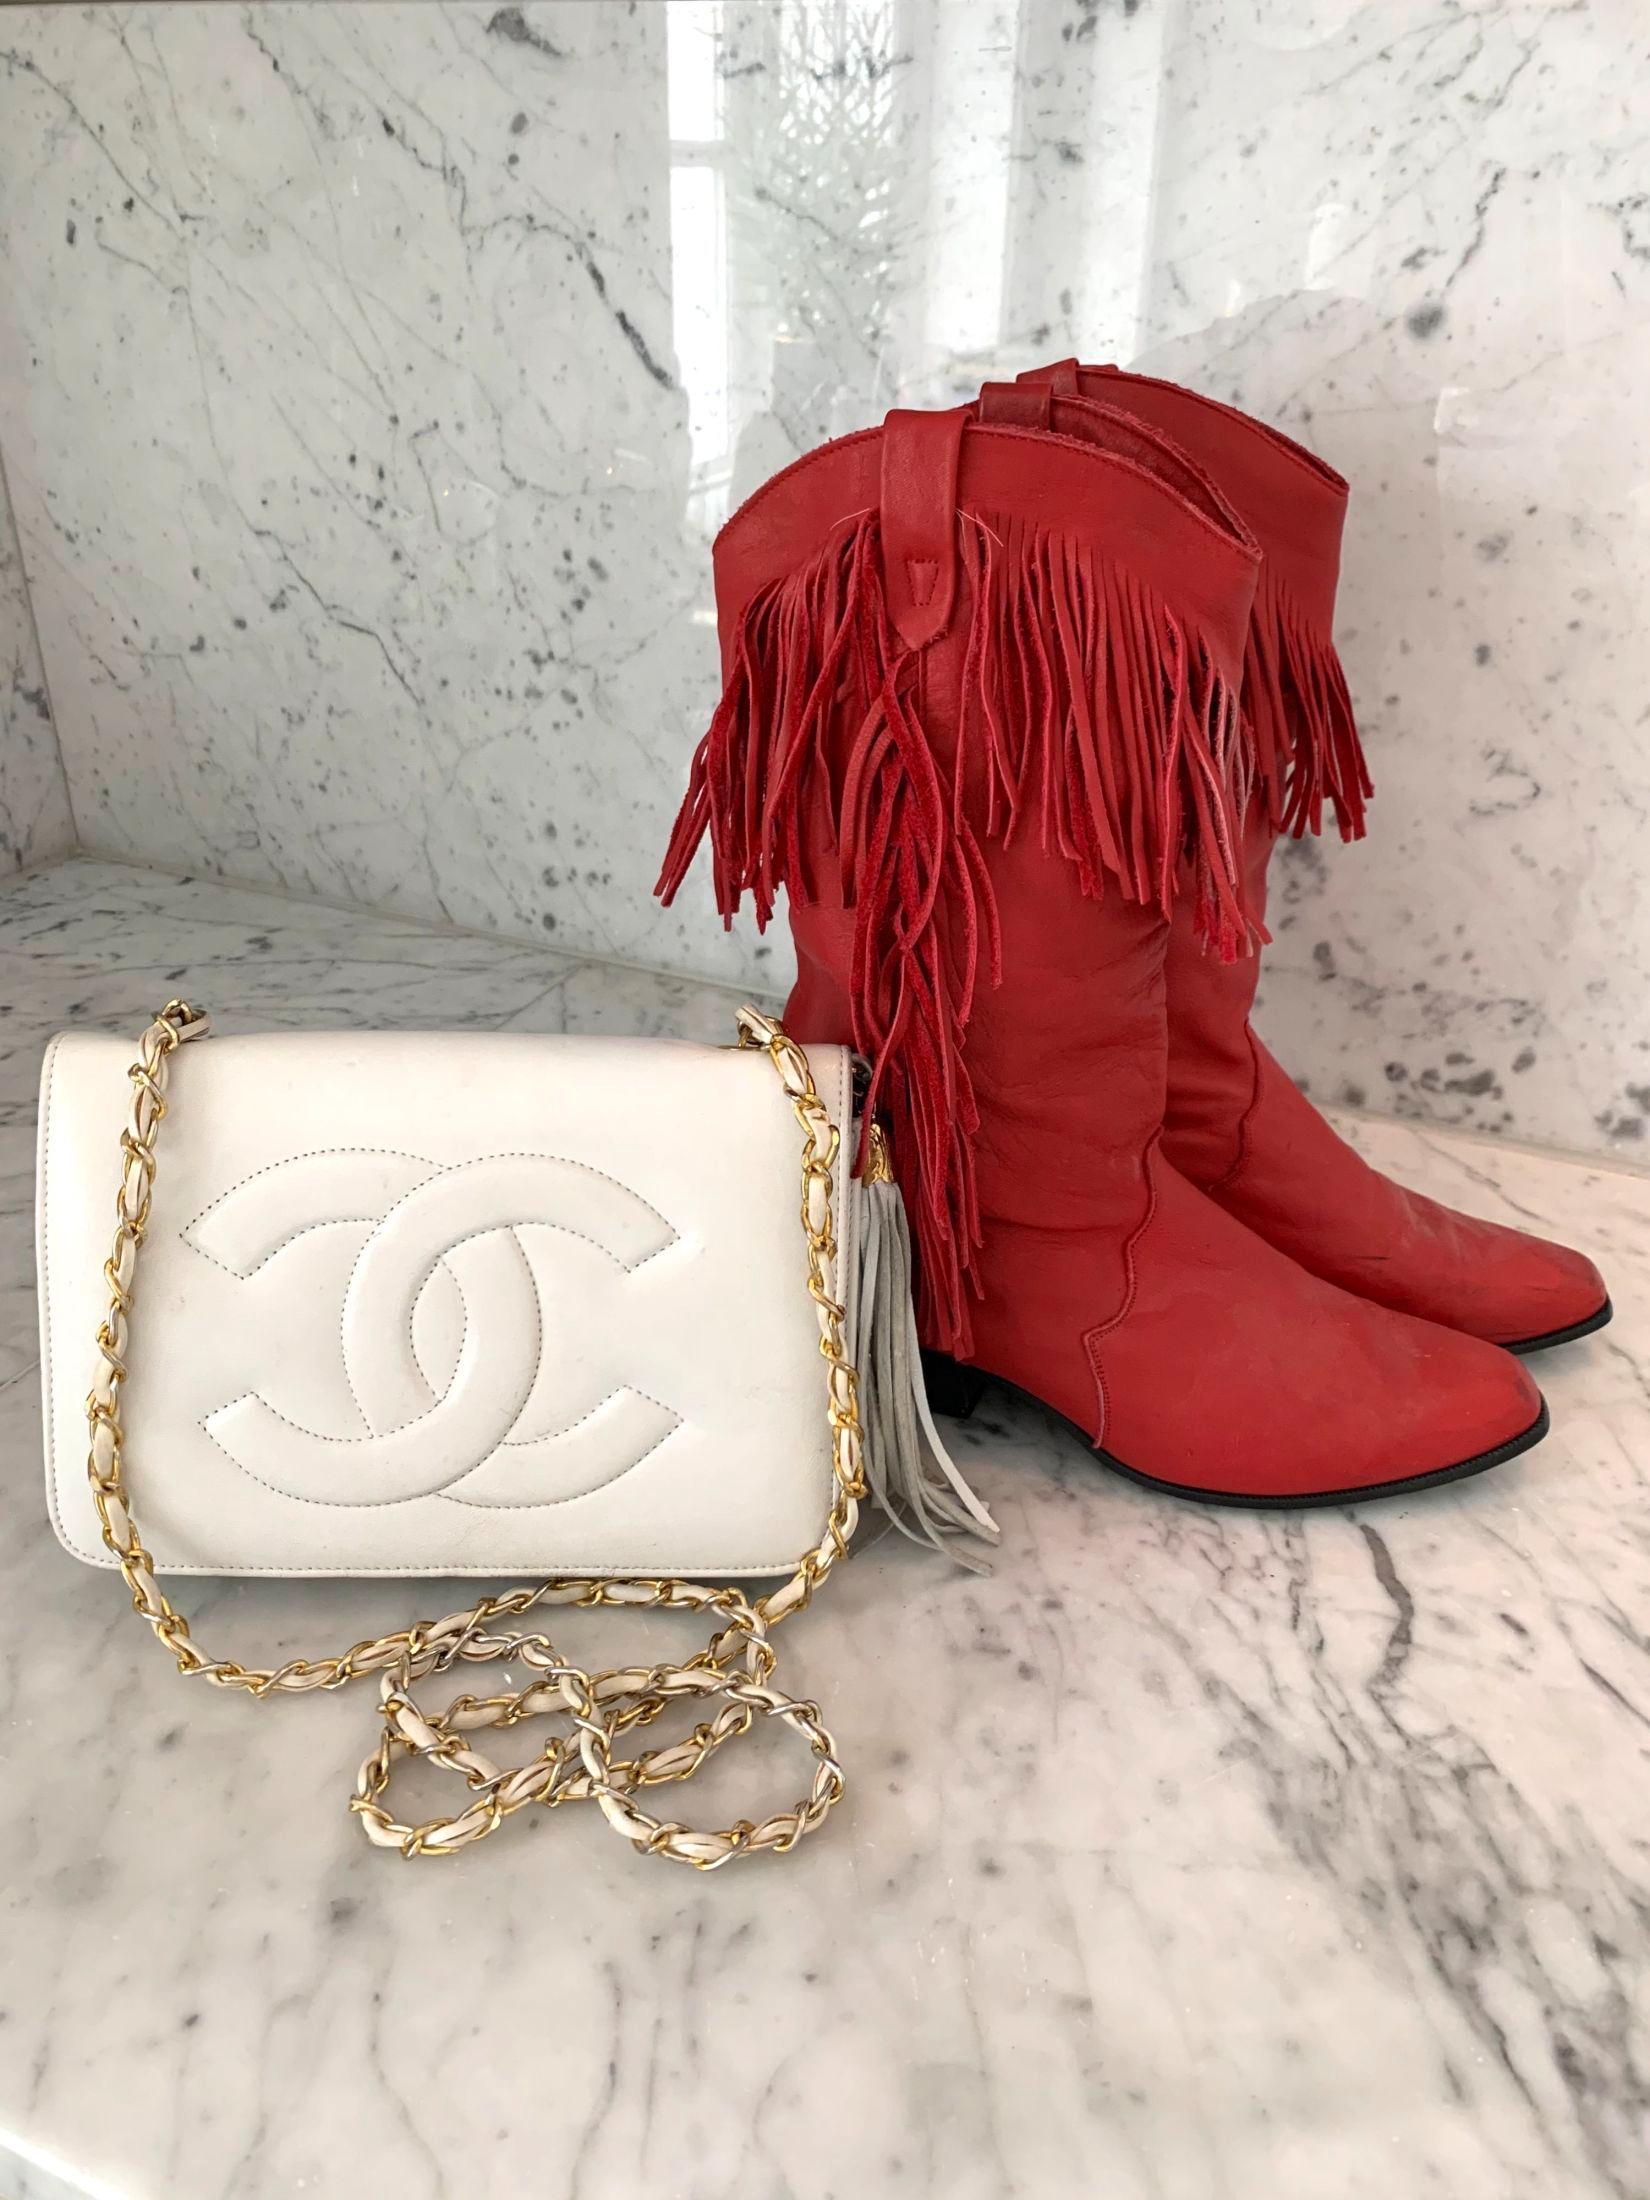 VINTAGE: Kroghs beste vintagekupp er en hvit Chanel-veske og et par røde cowboy-boots. Foto: Privat